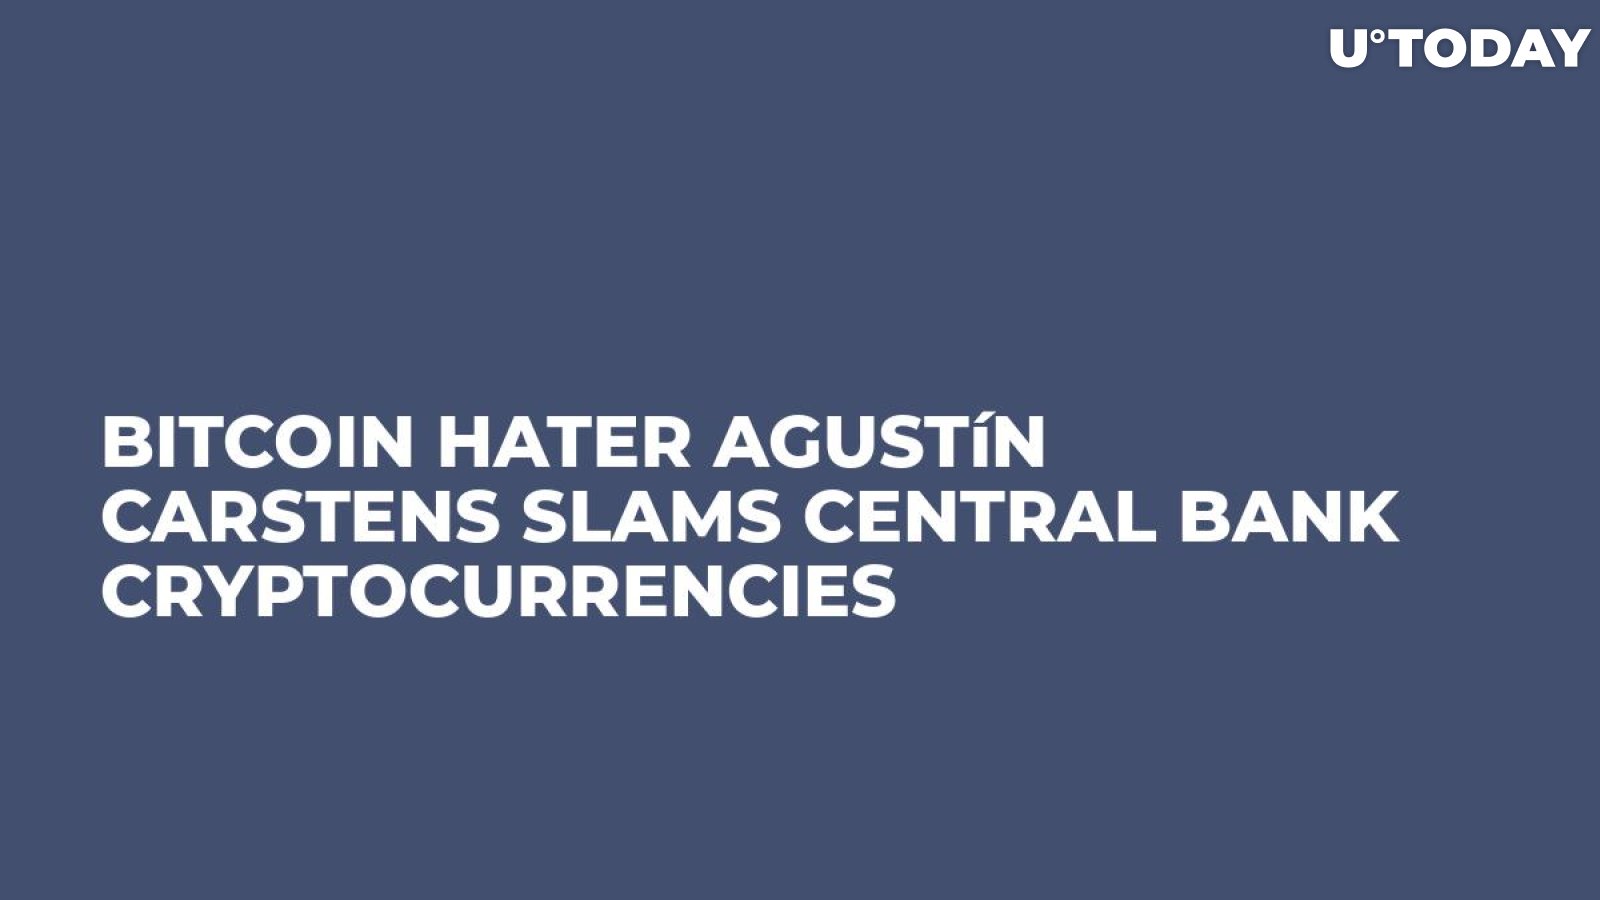 Bitcoin Hater Agustín Carstens Slams Central Bank Cryptocurrencies   